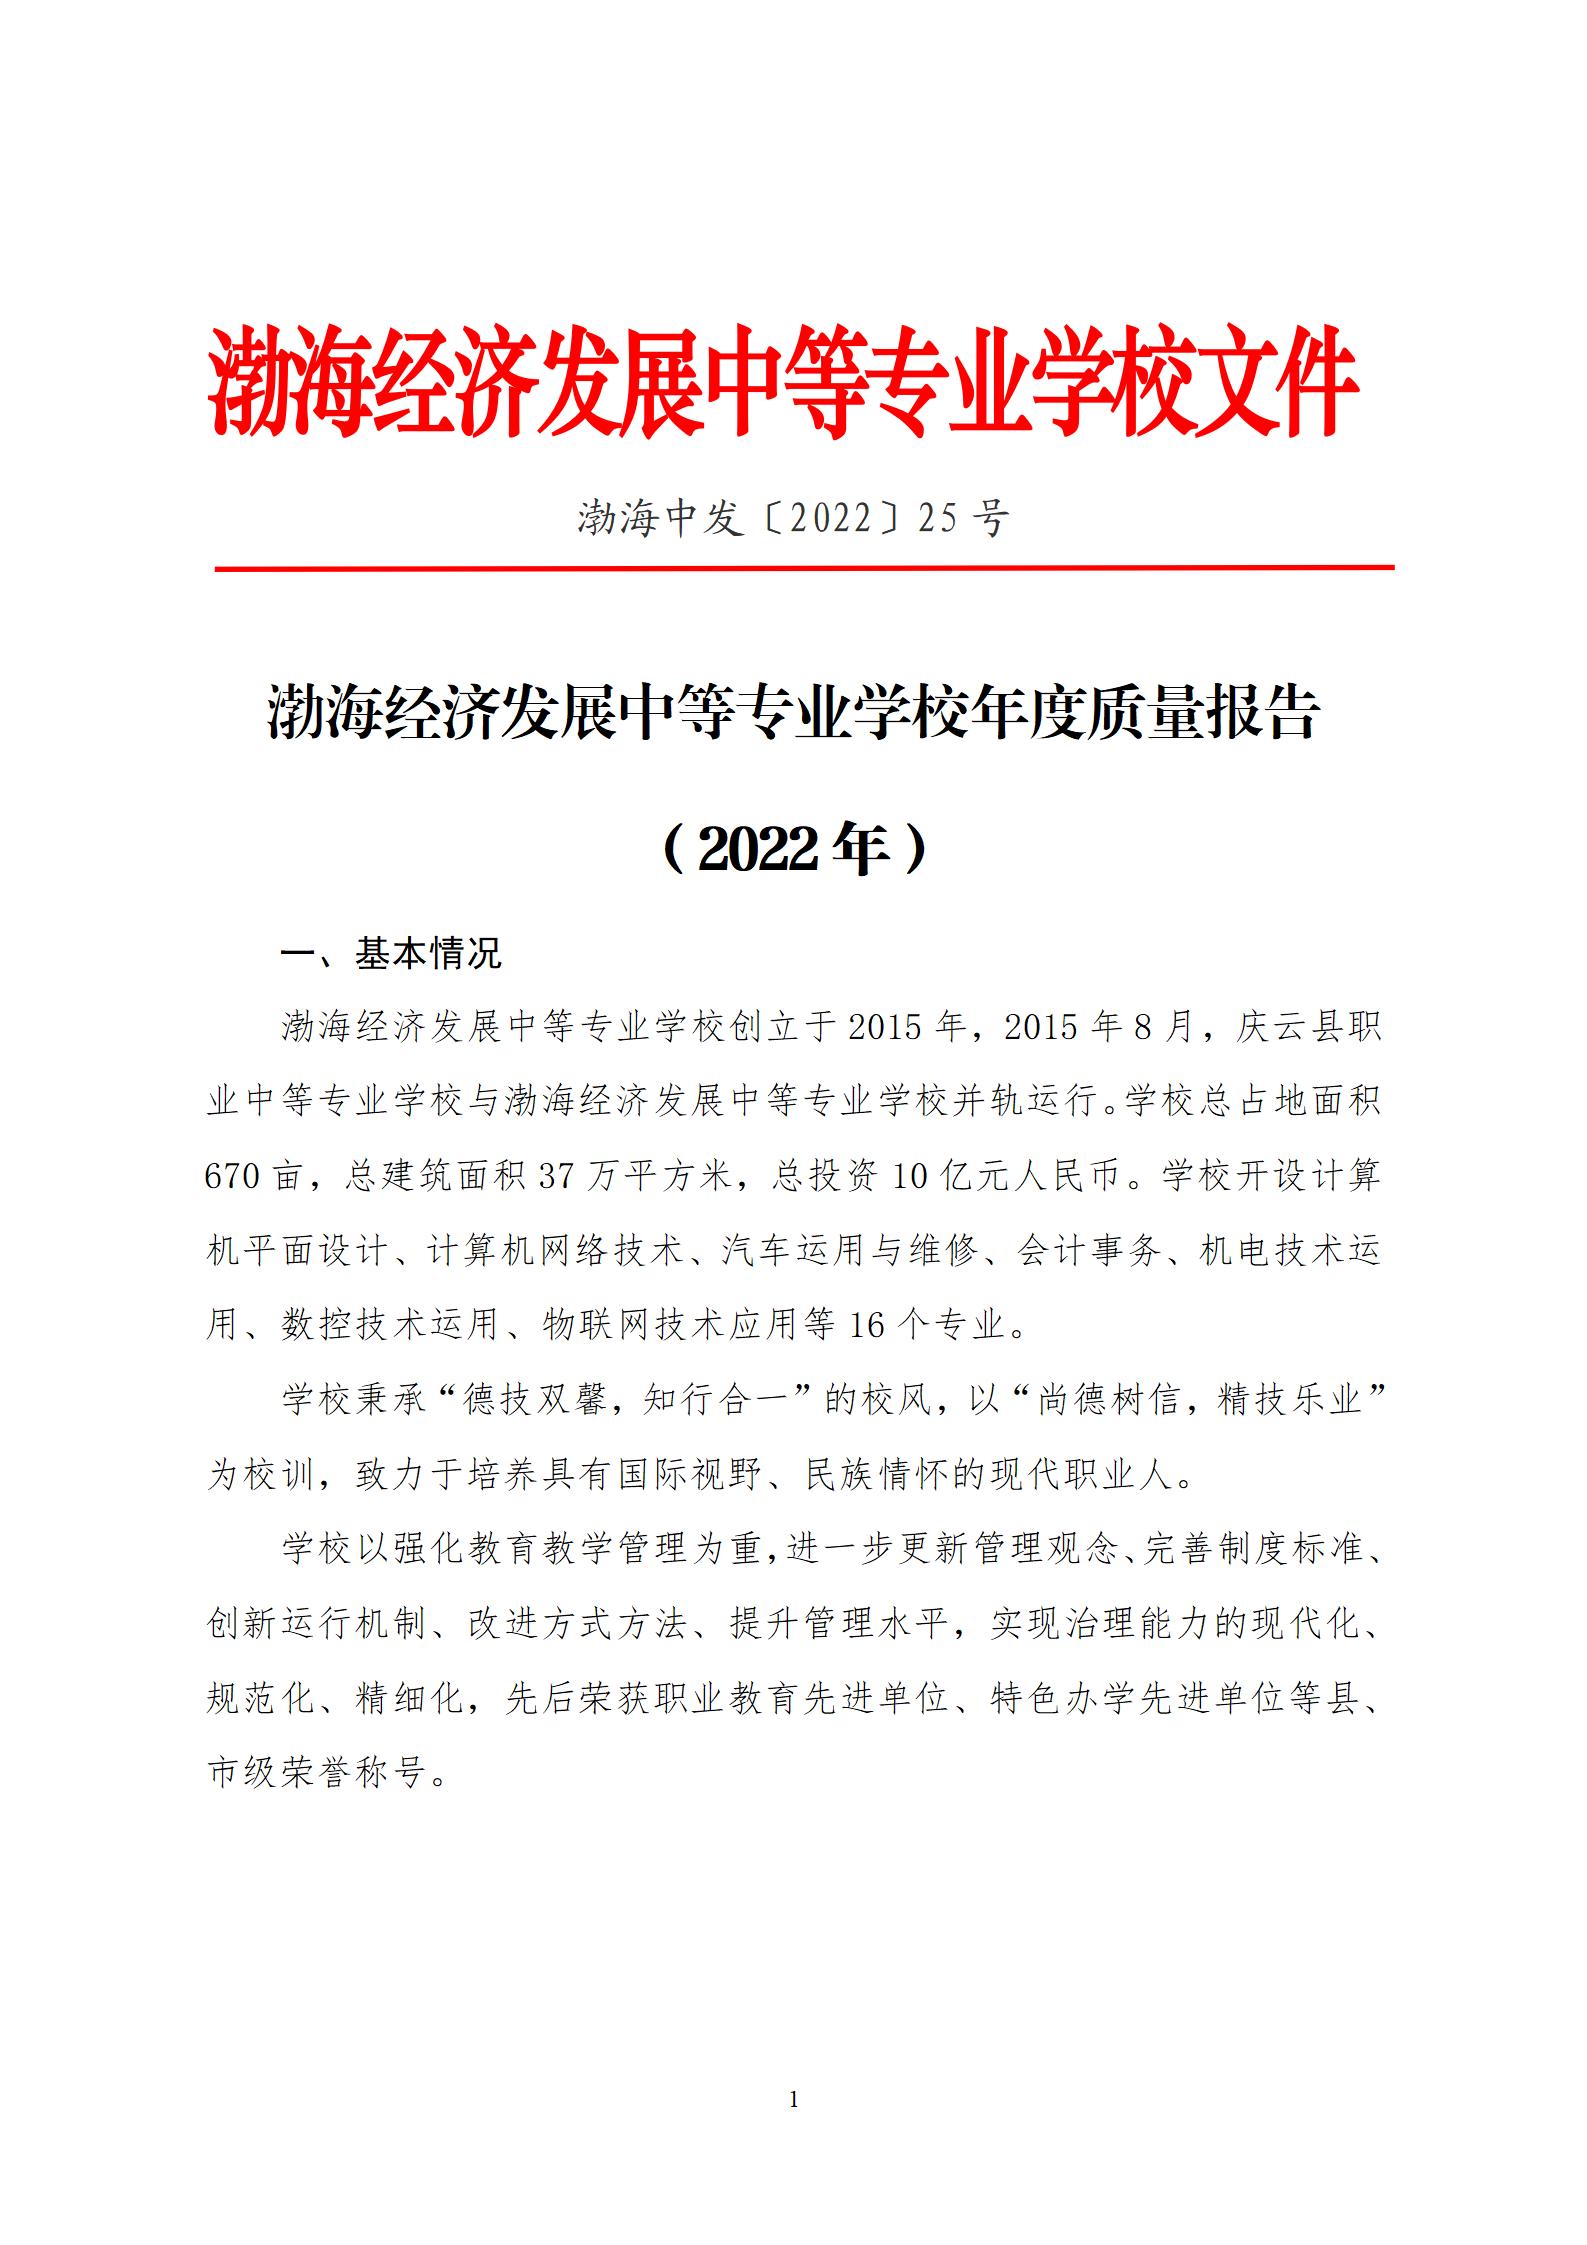 2022年渤海经济发展中等专业学校年度质量报告(1)_05.jpg